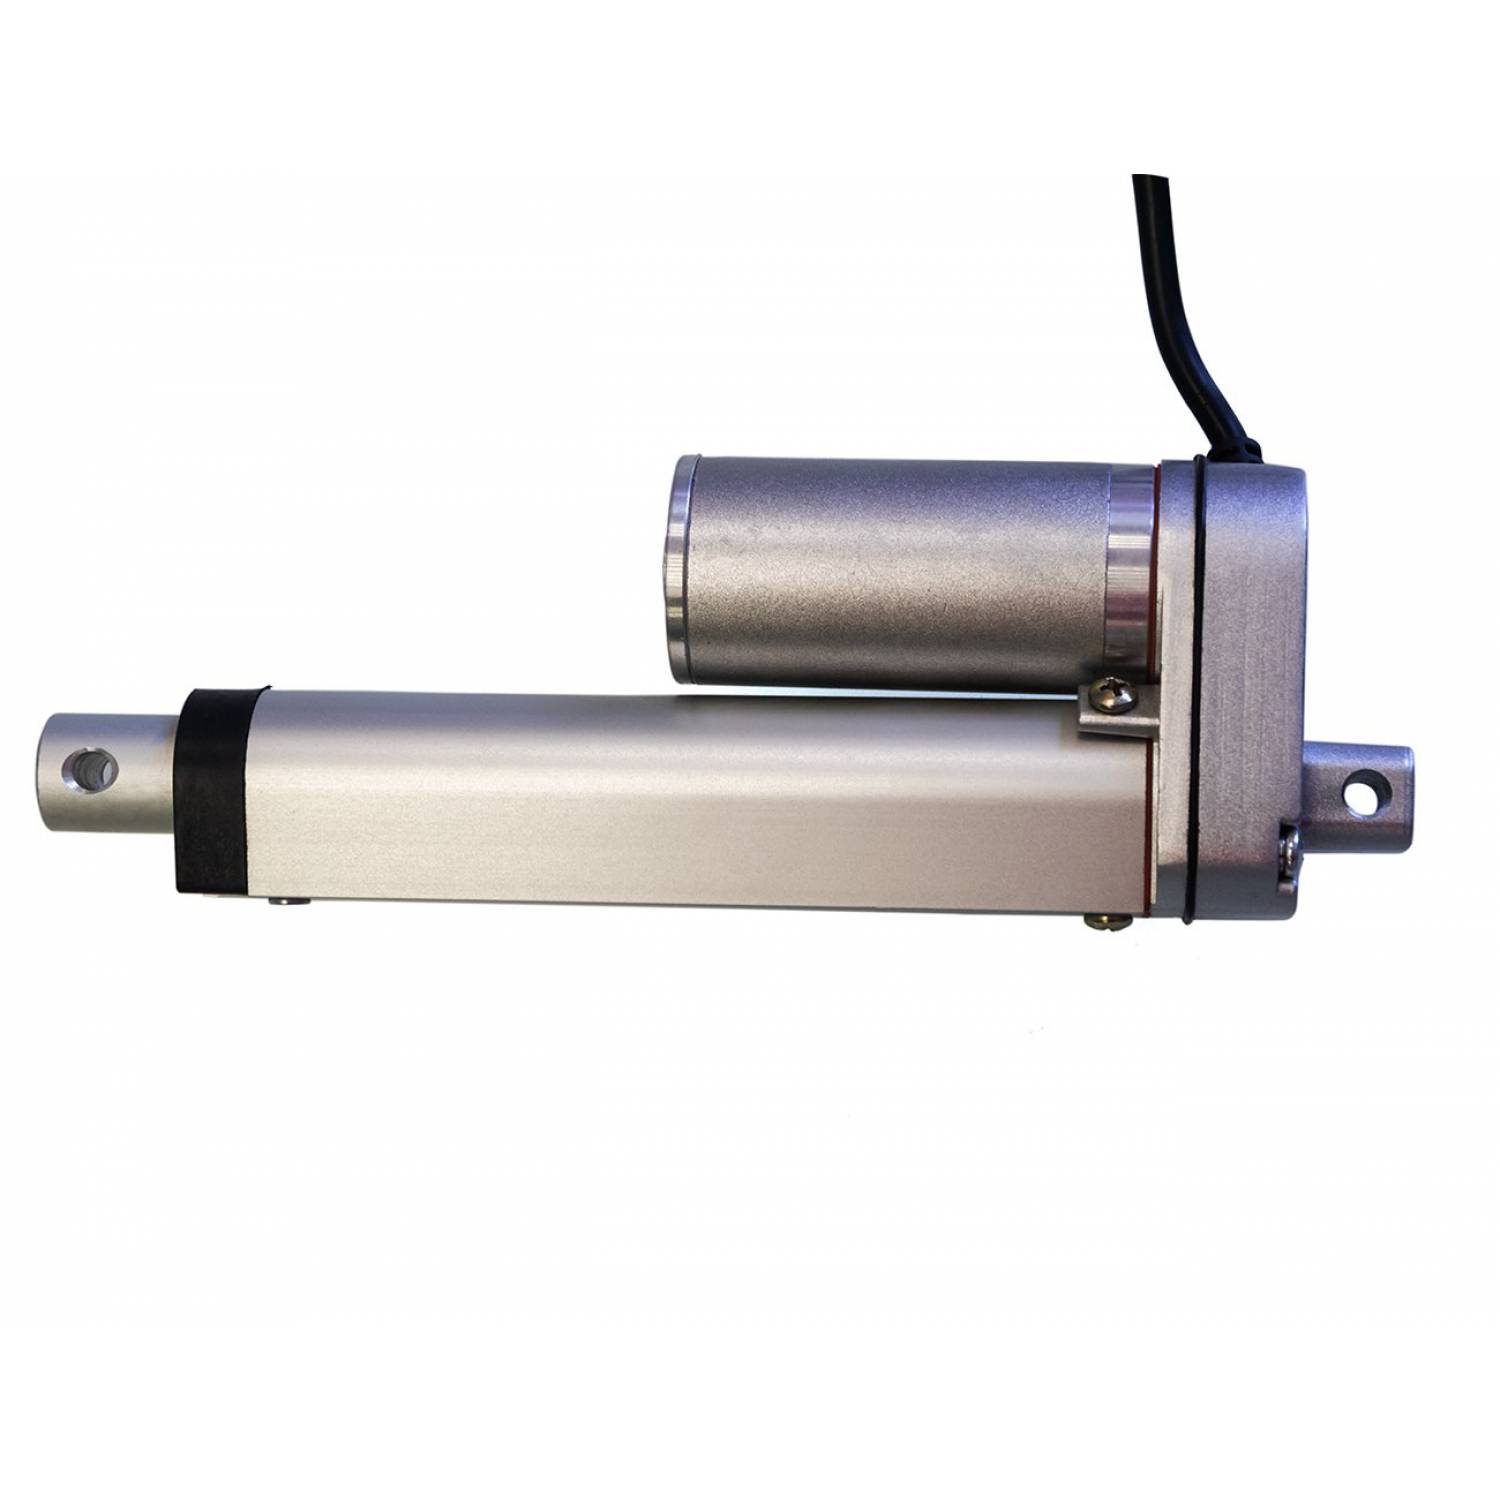 Актуатор (линейный привод) длина 200 мм, питание 12 вольт , нагрузка до 130 кг, скорость 7 мм/сек